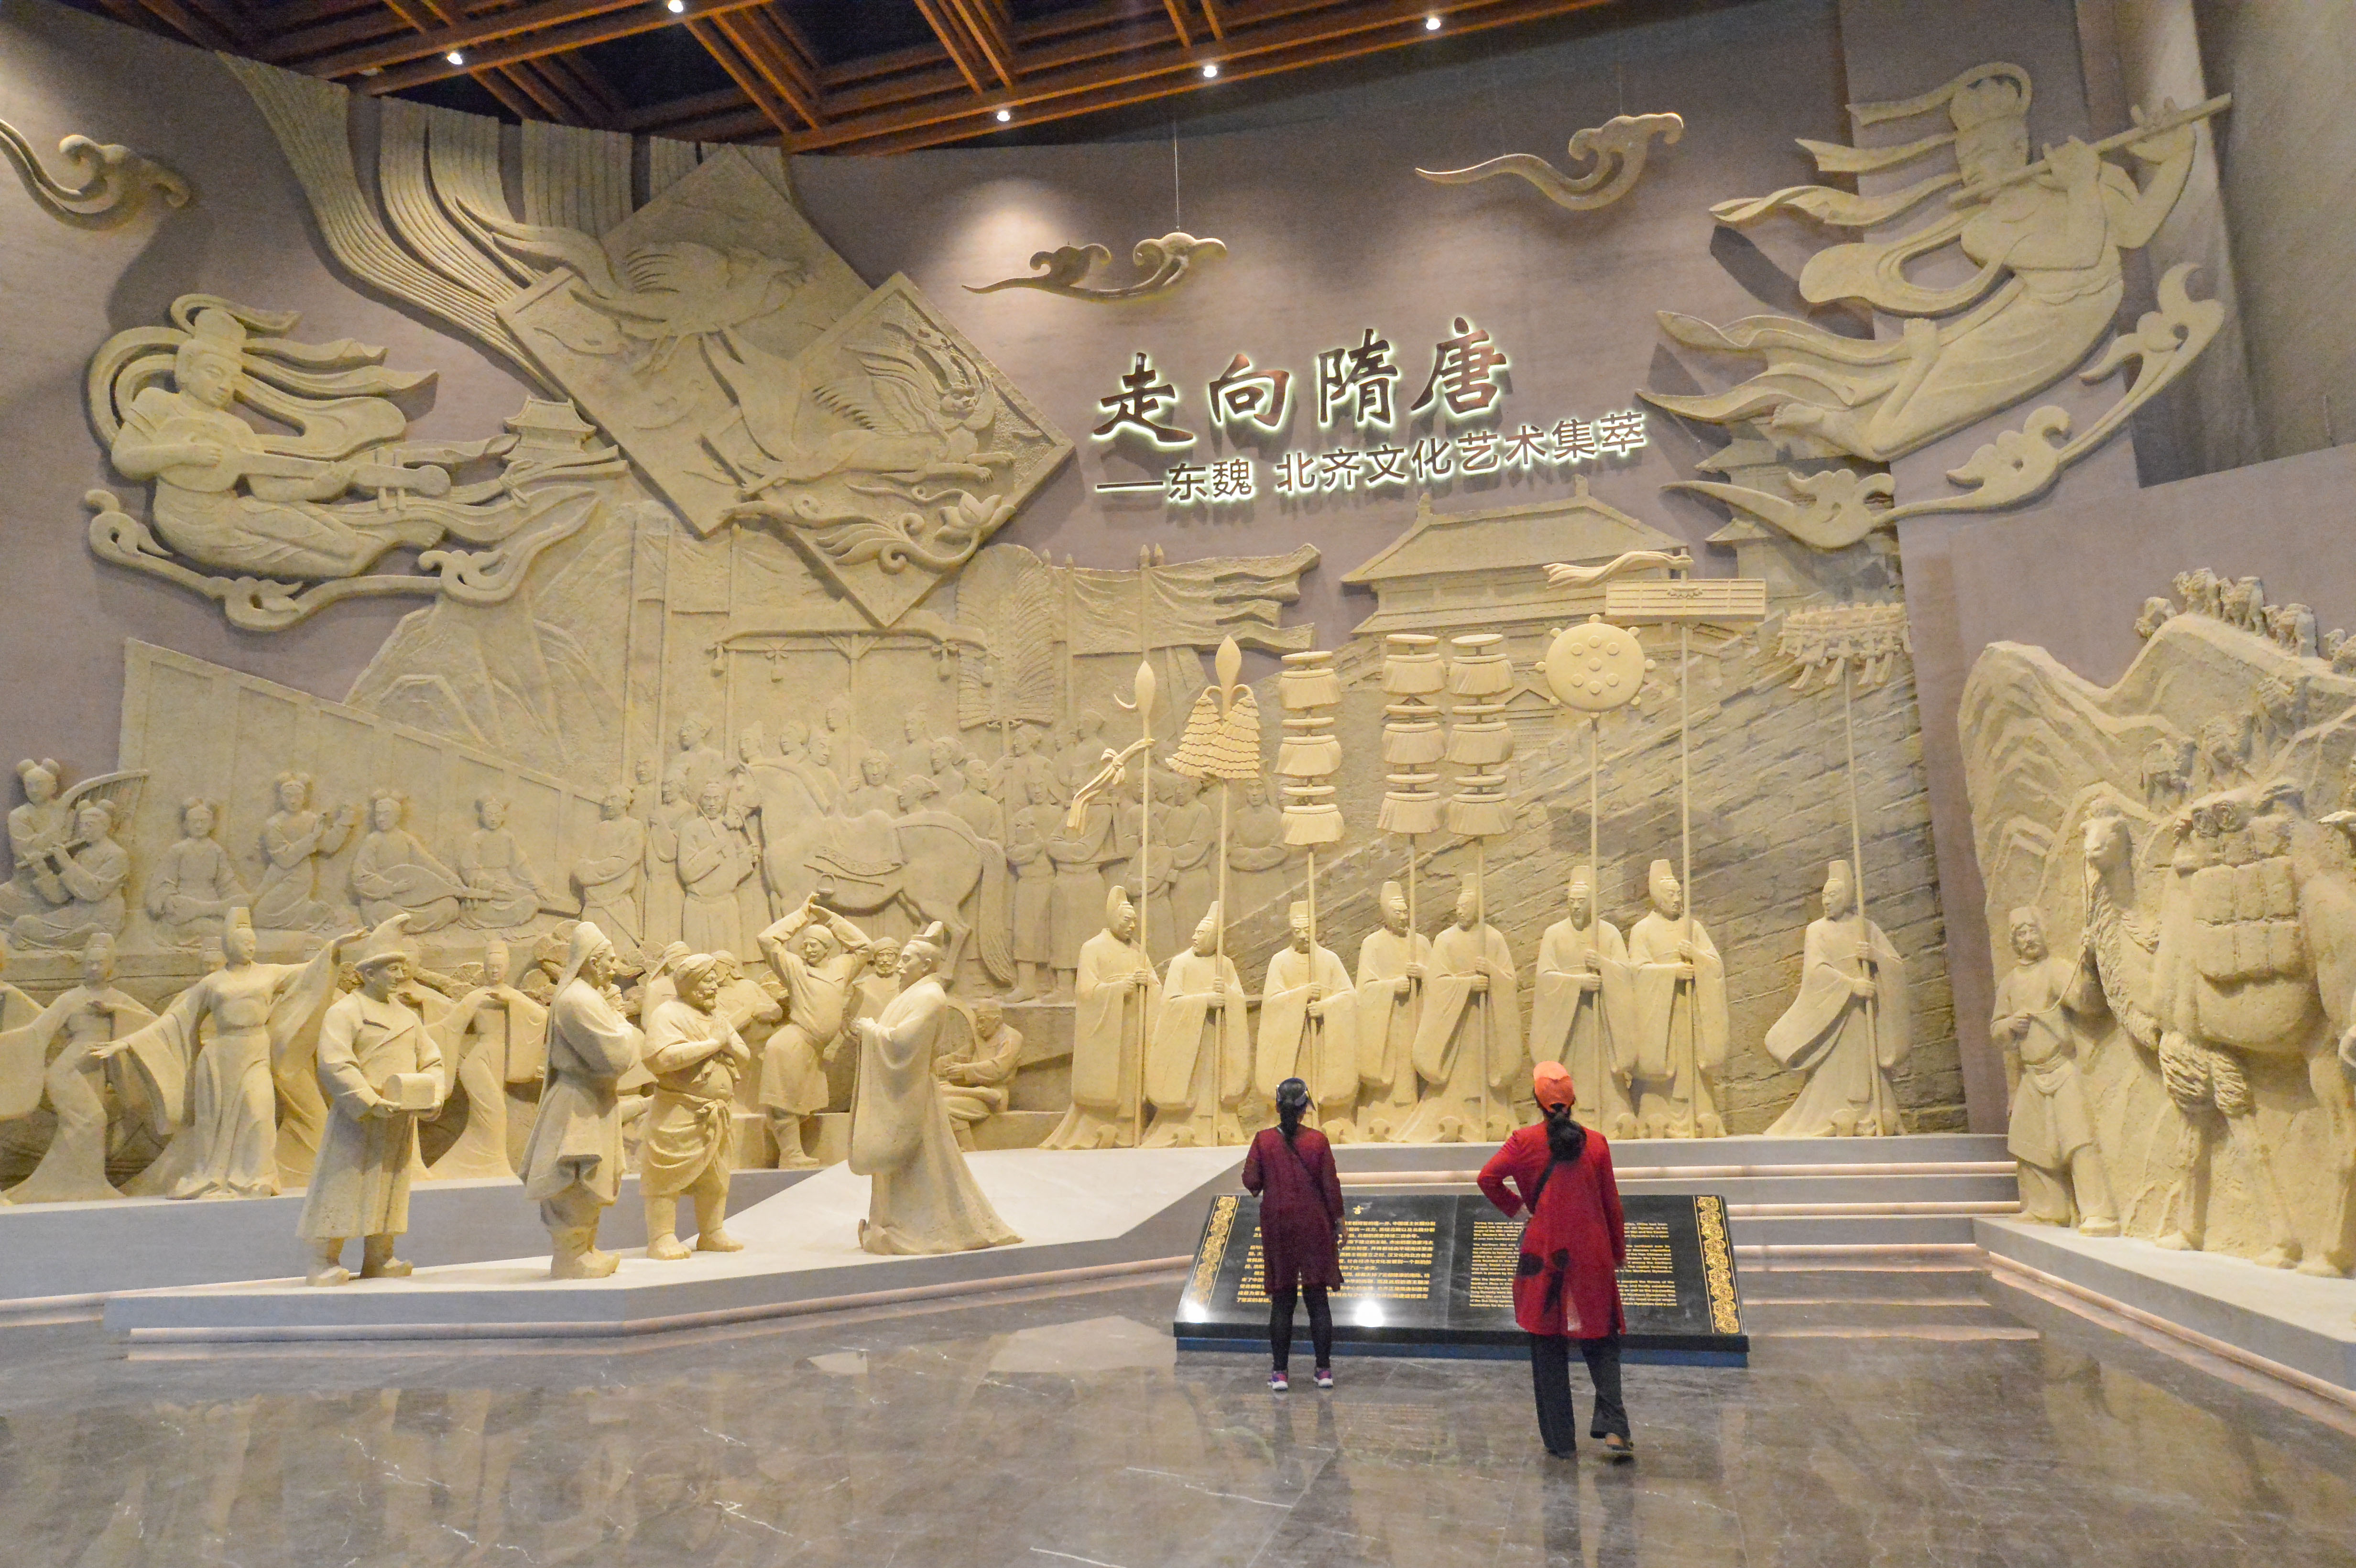 ↑ 9月19日,游客在河北磁县北朝考古博物馆参观